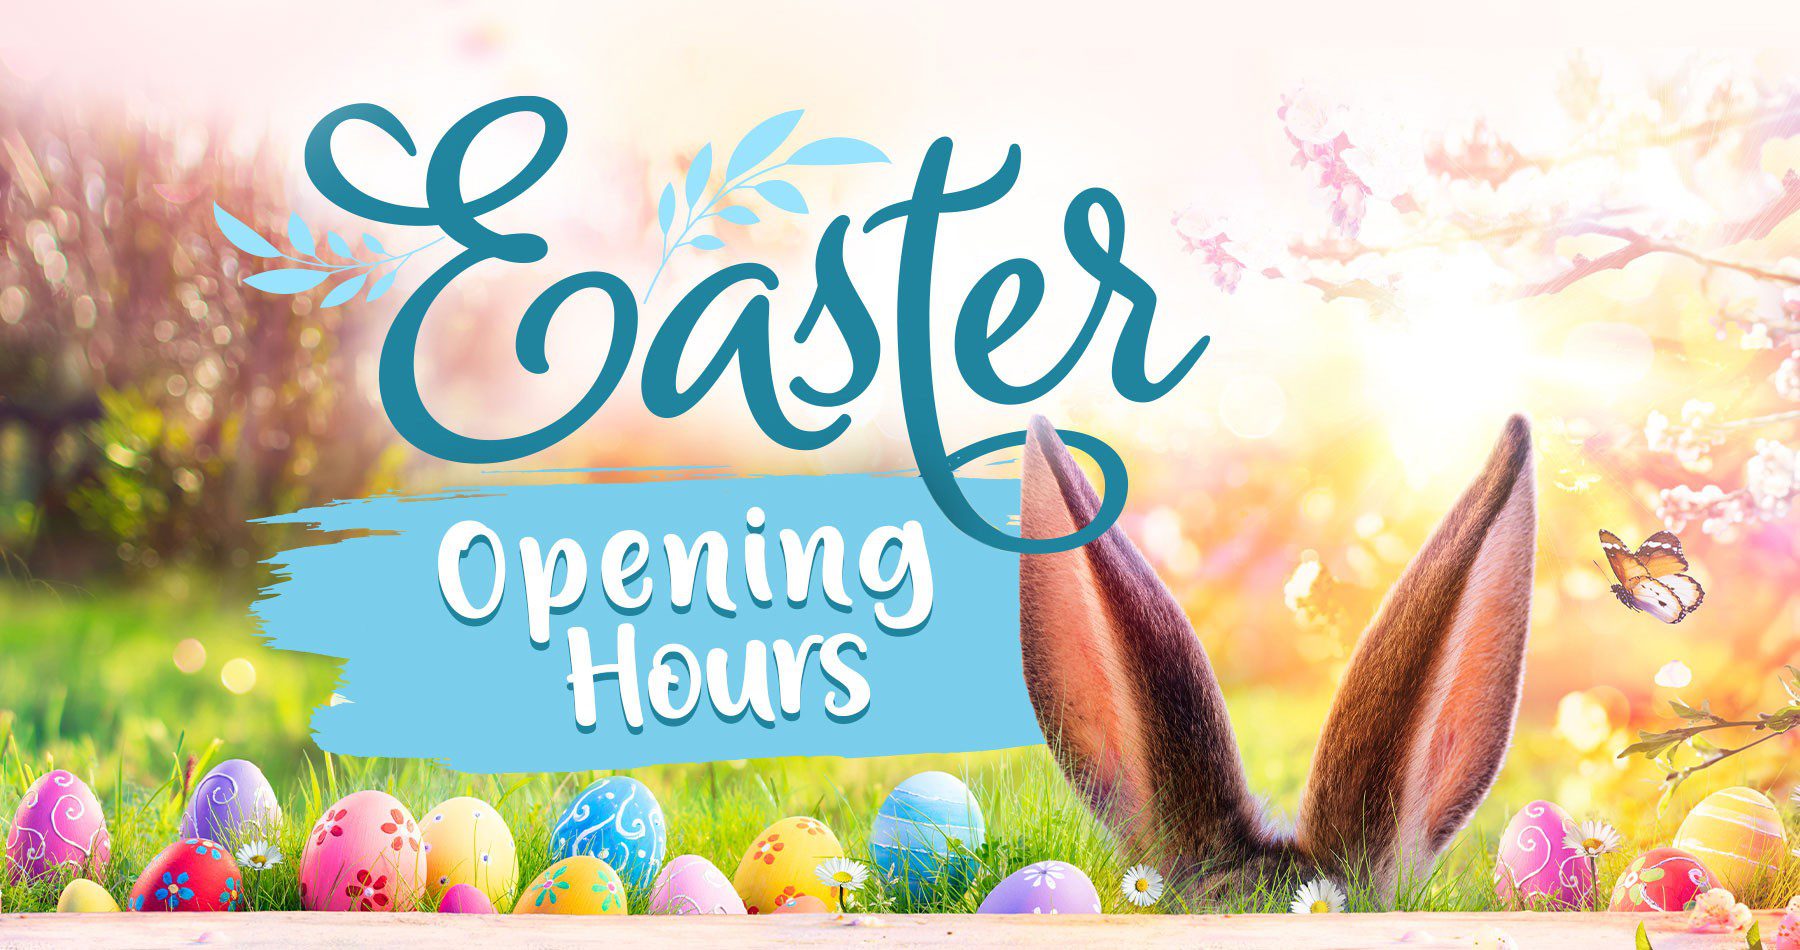 Earnshaws Easter Open Hours